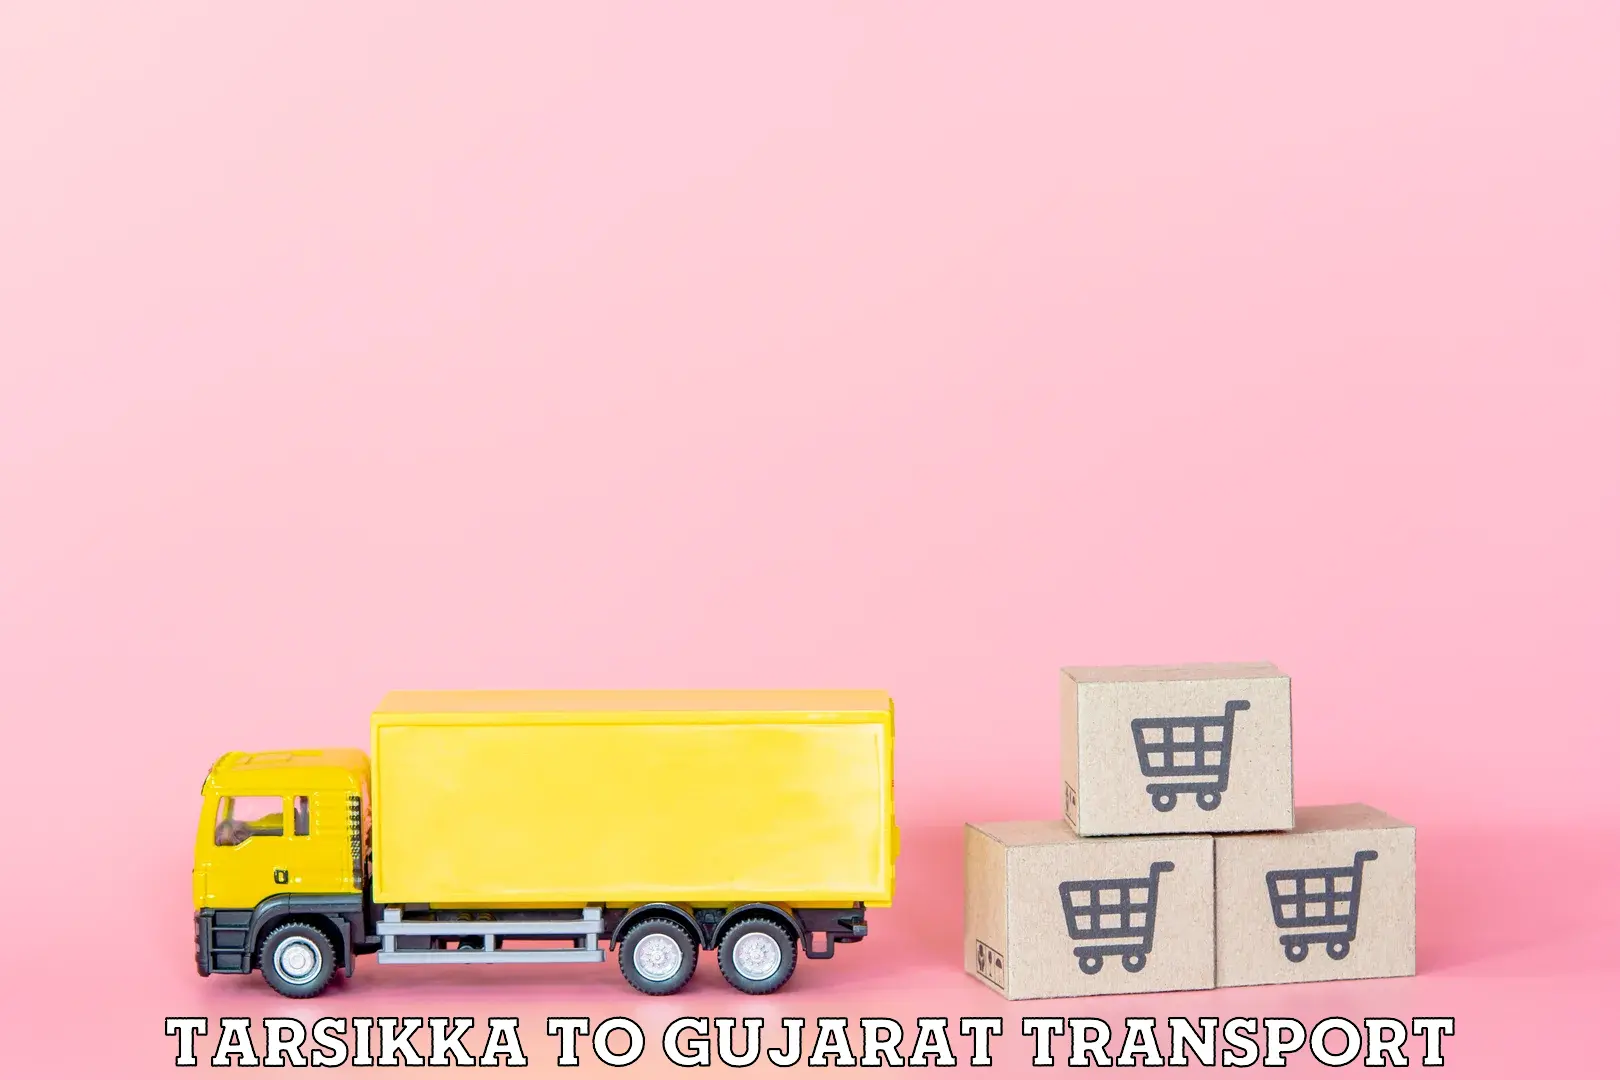 Transportation solution services Tarsikka to Banaskantha